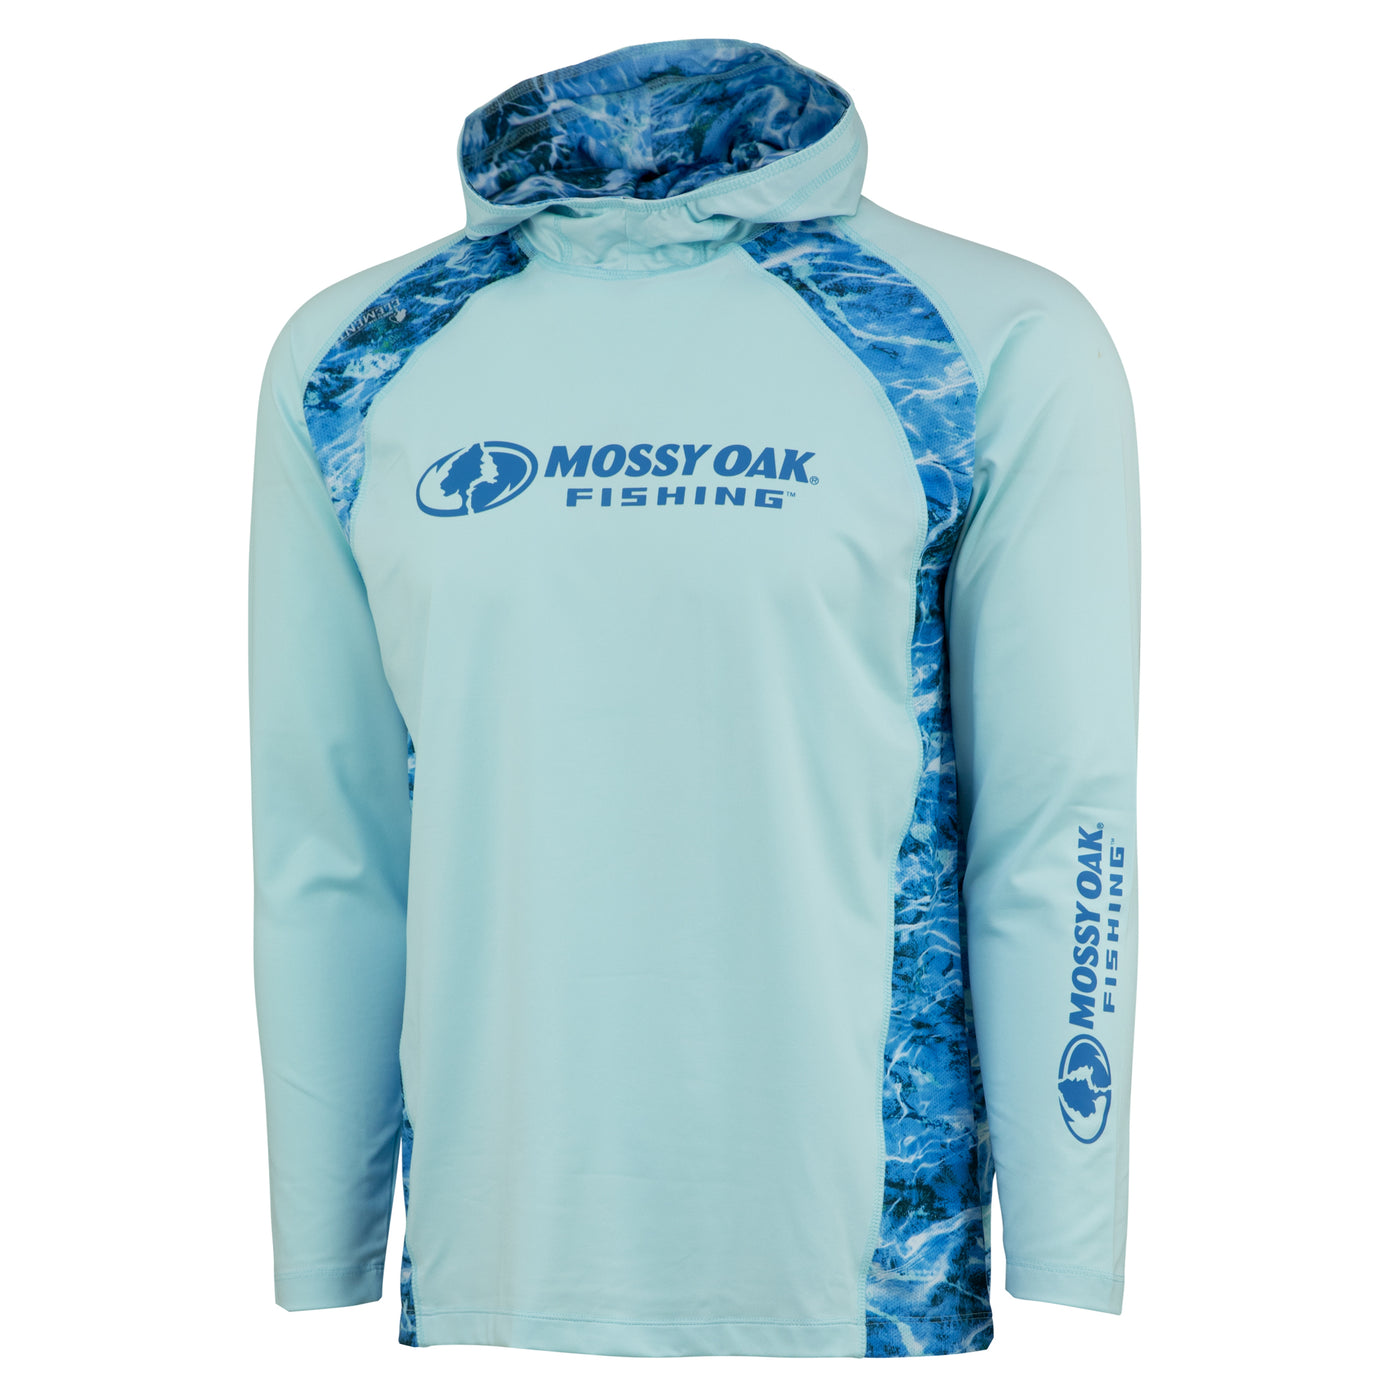 Fishing Shirts for Women--UV Sun Protection Shirts – The Mossy Oak